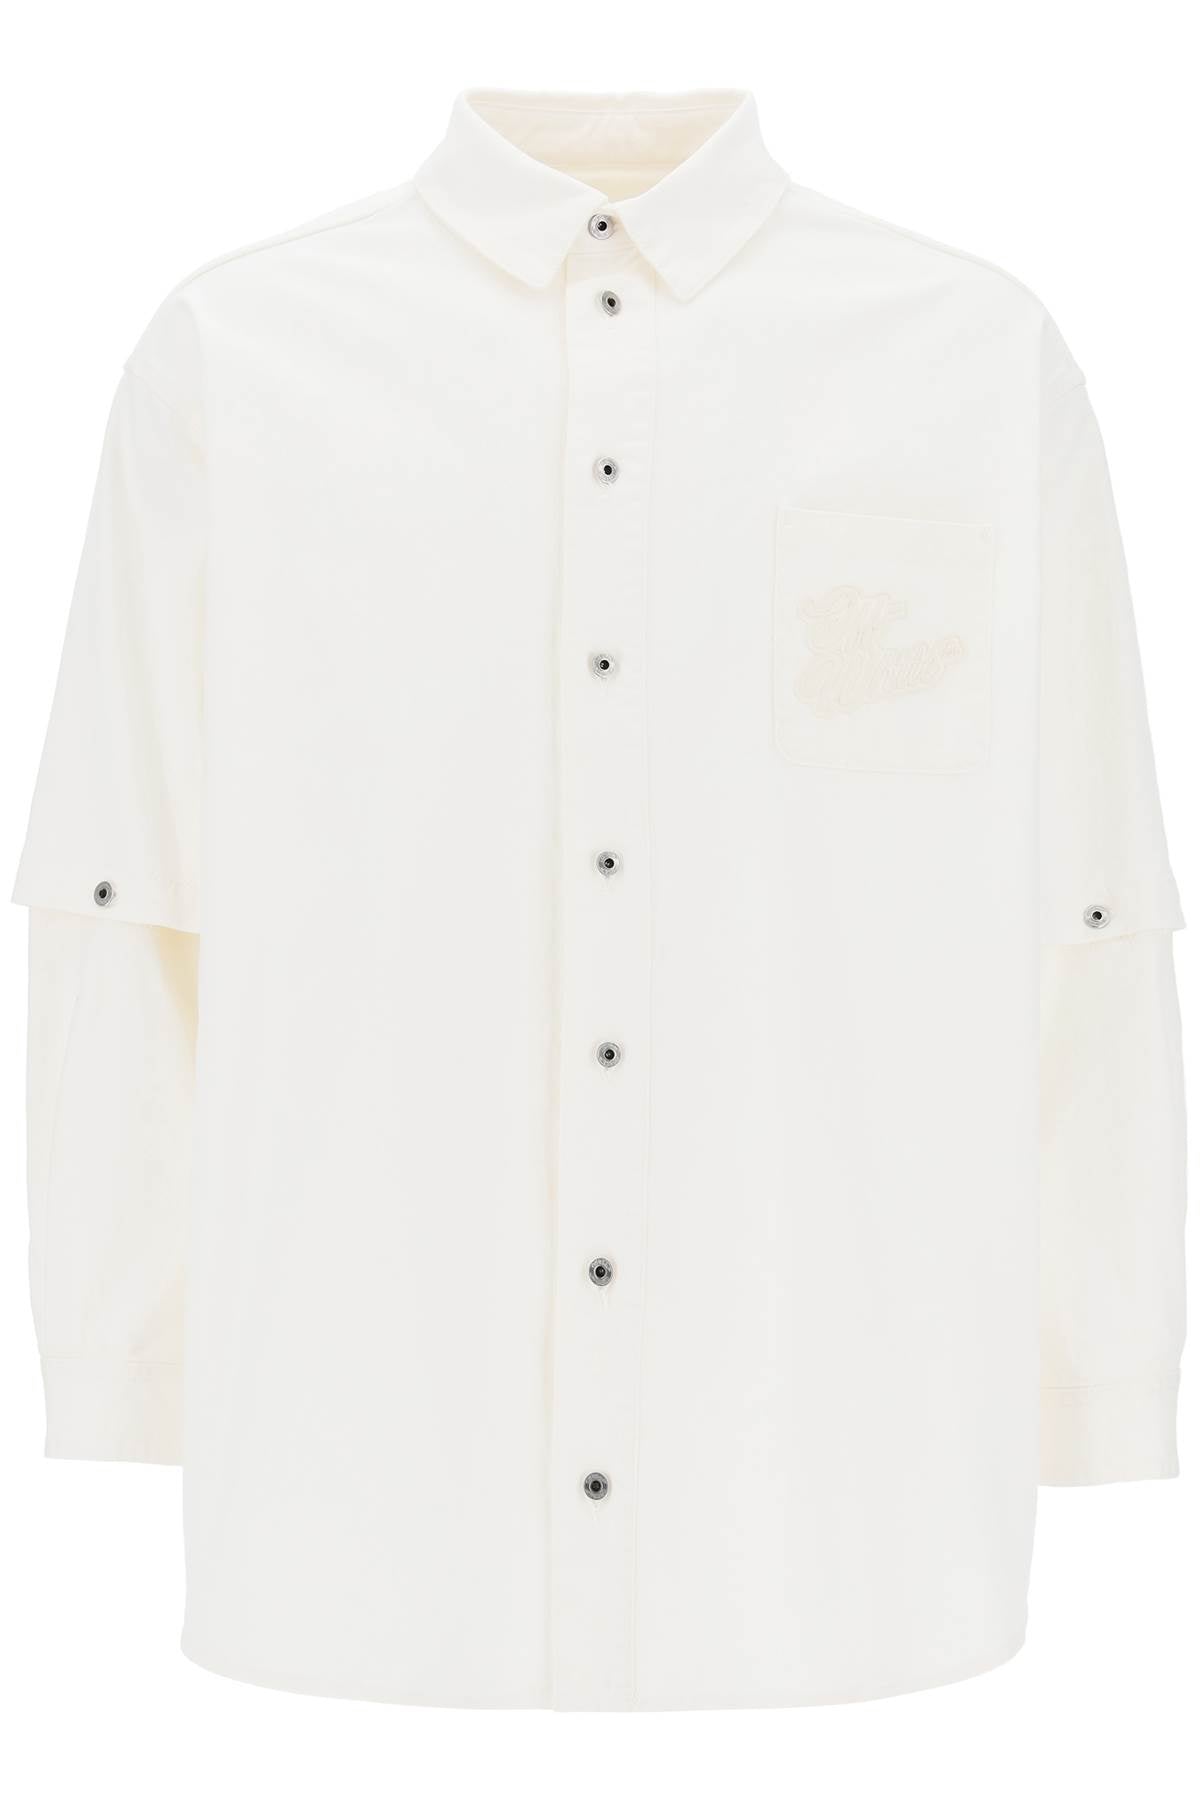 90年代ロゴのオーバーシャツ - 白いコットン - 男性用 - SS24